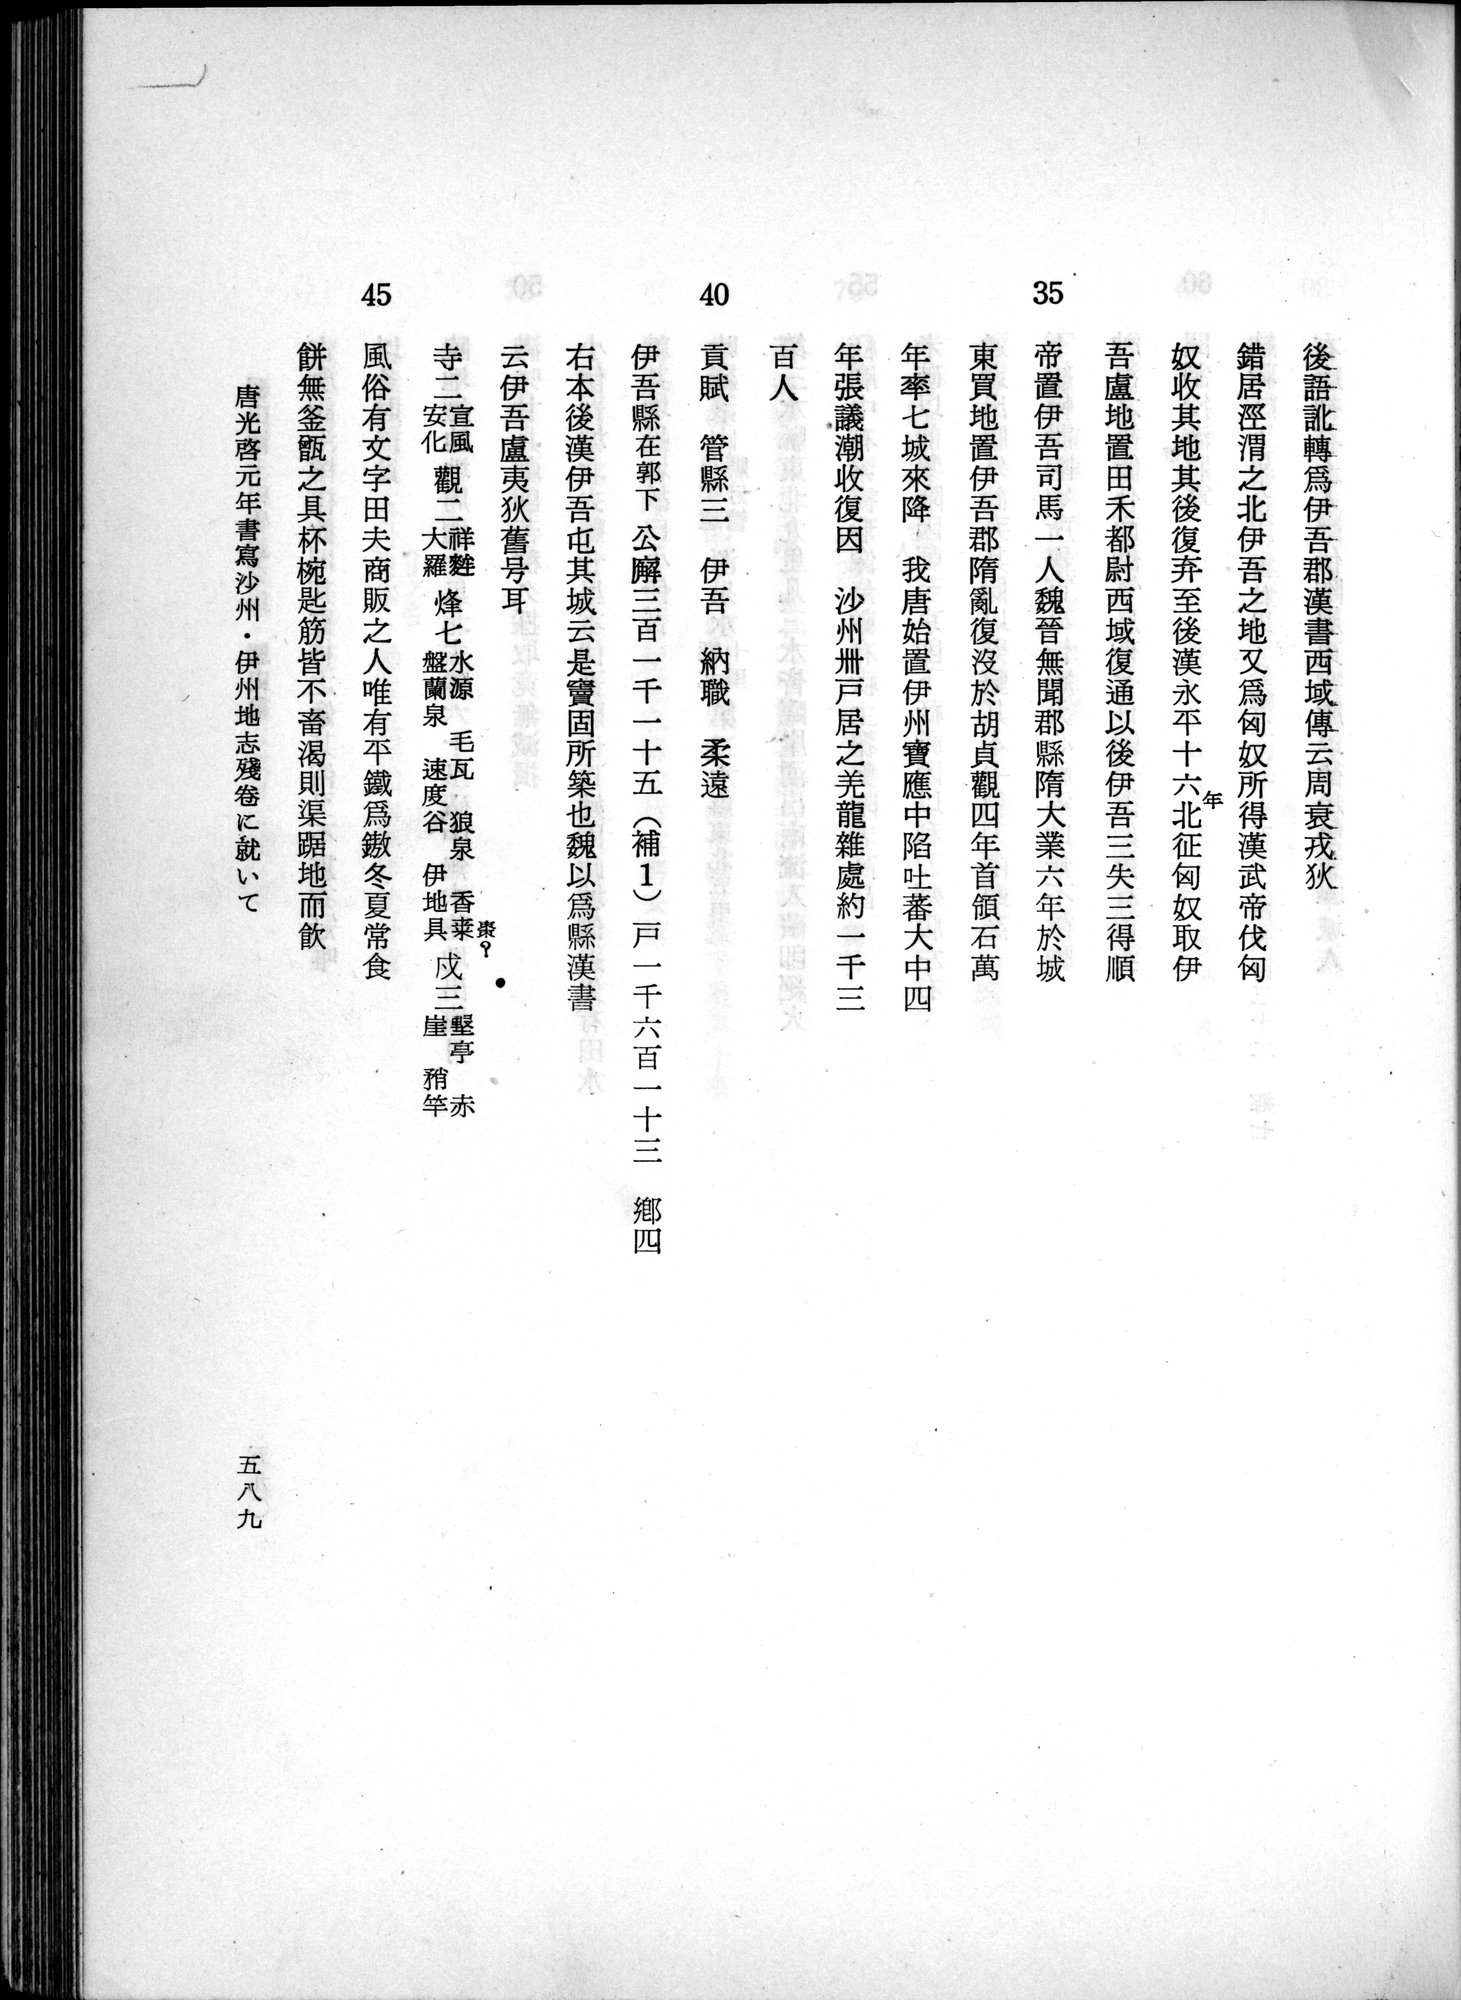 羽田博士史学論文集 : vol.1 / Page 627 (Grayscale High Resolution Image)